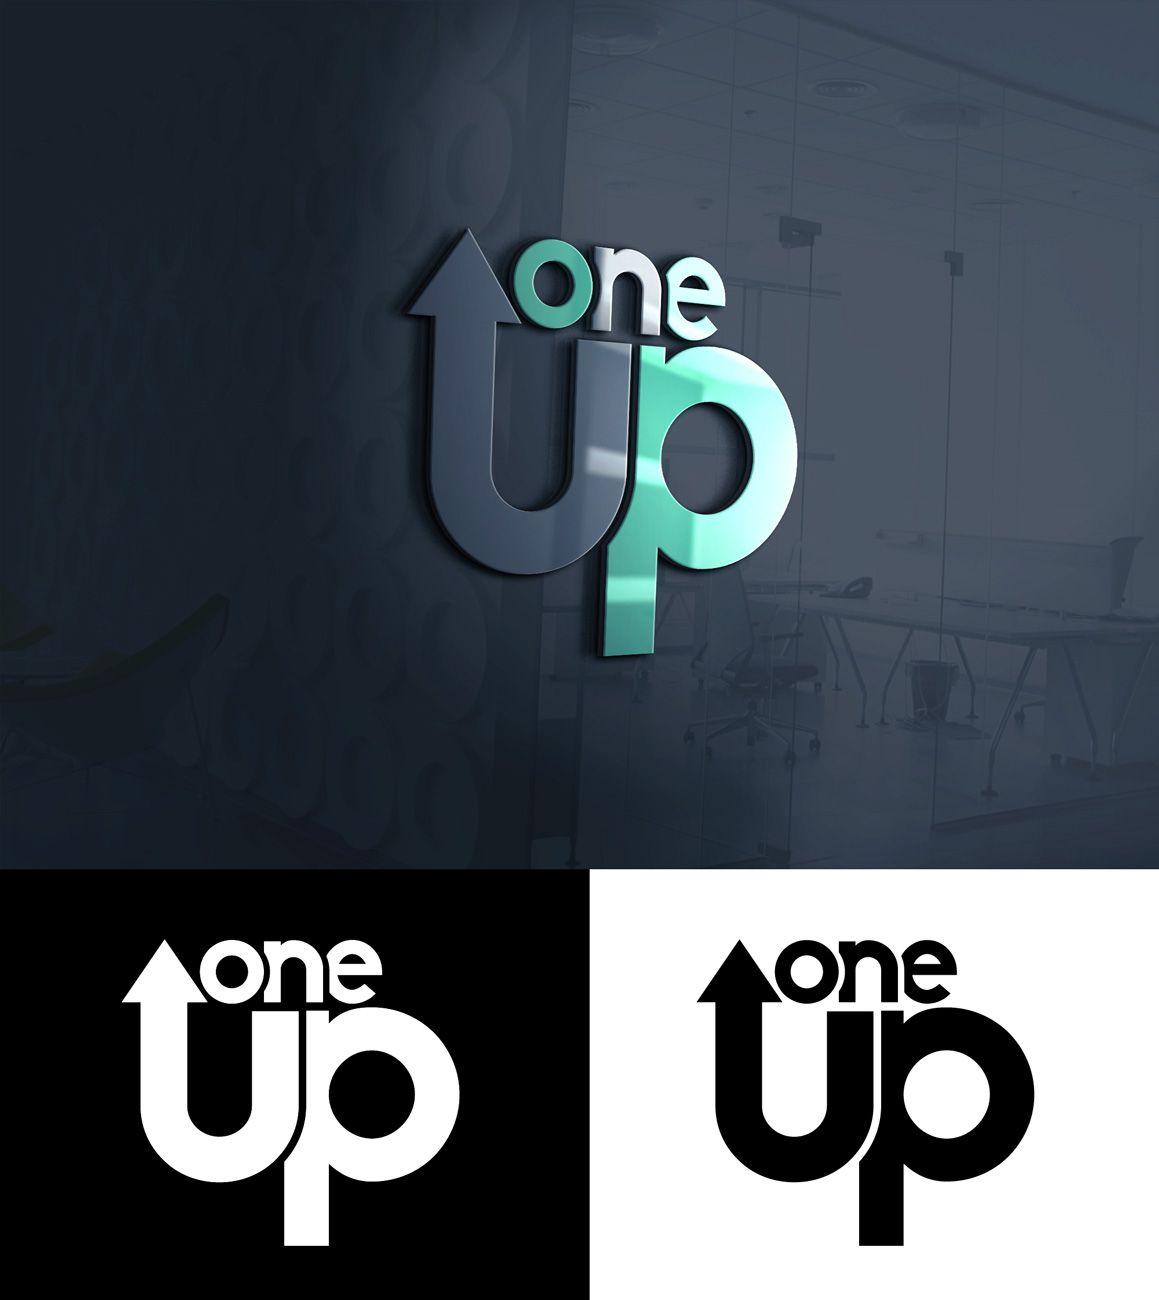 1UP Logo - Modern, Playful, Bank Logo Design for 1 UP or One Up